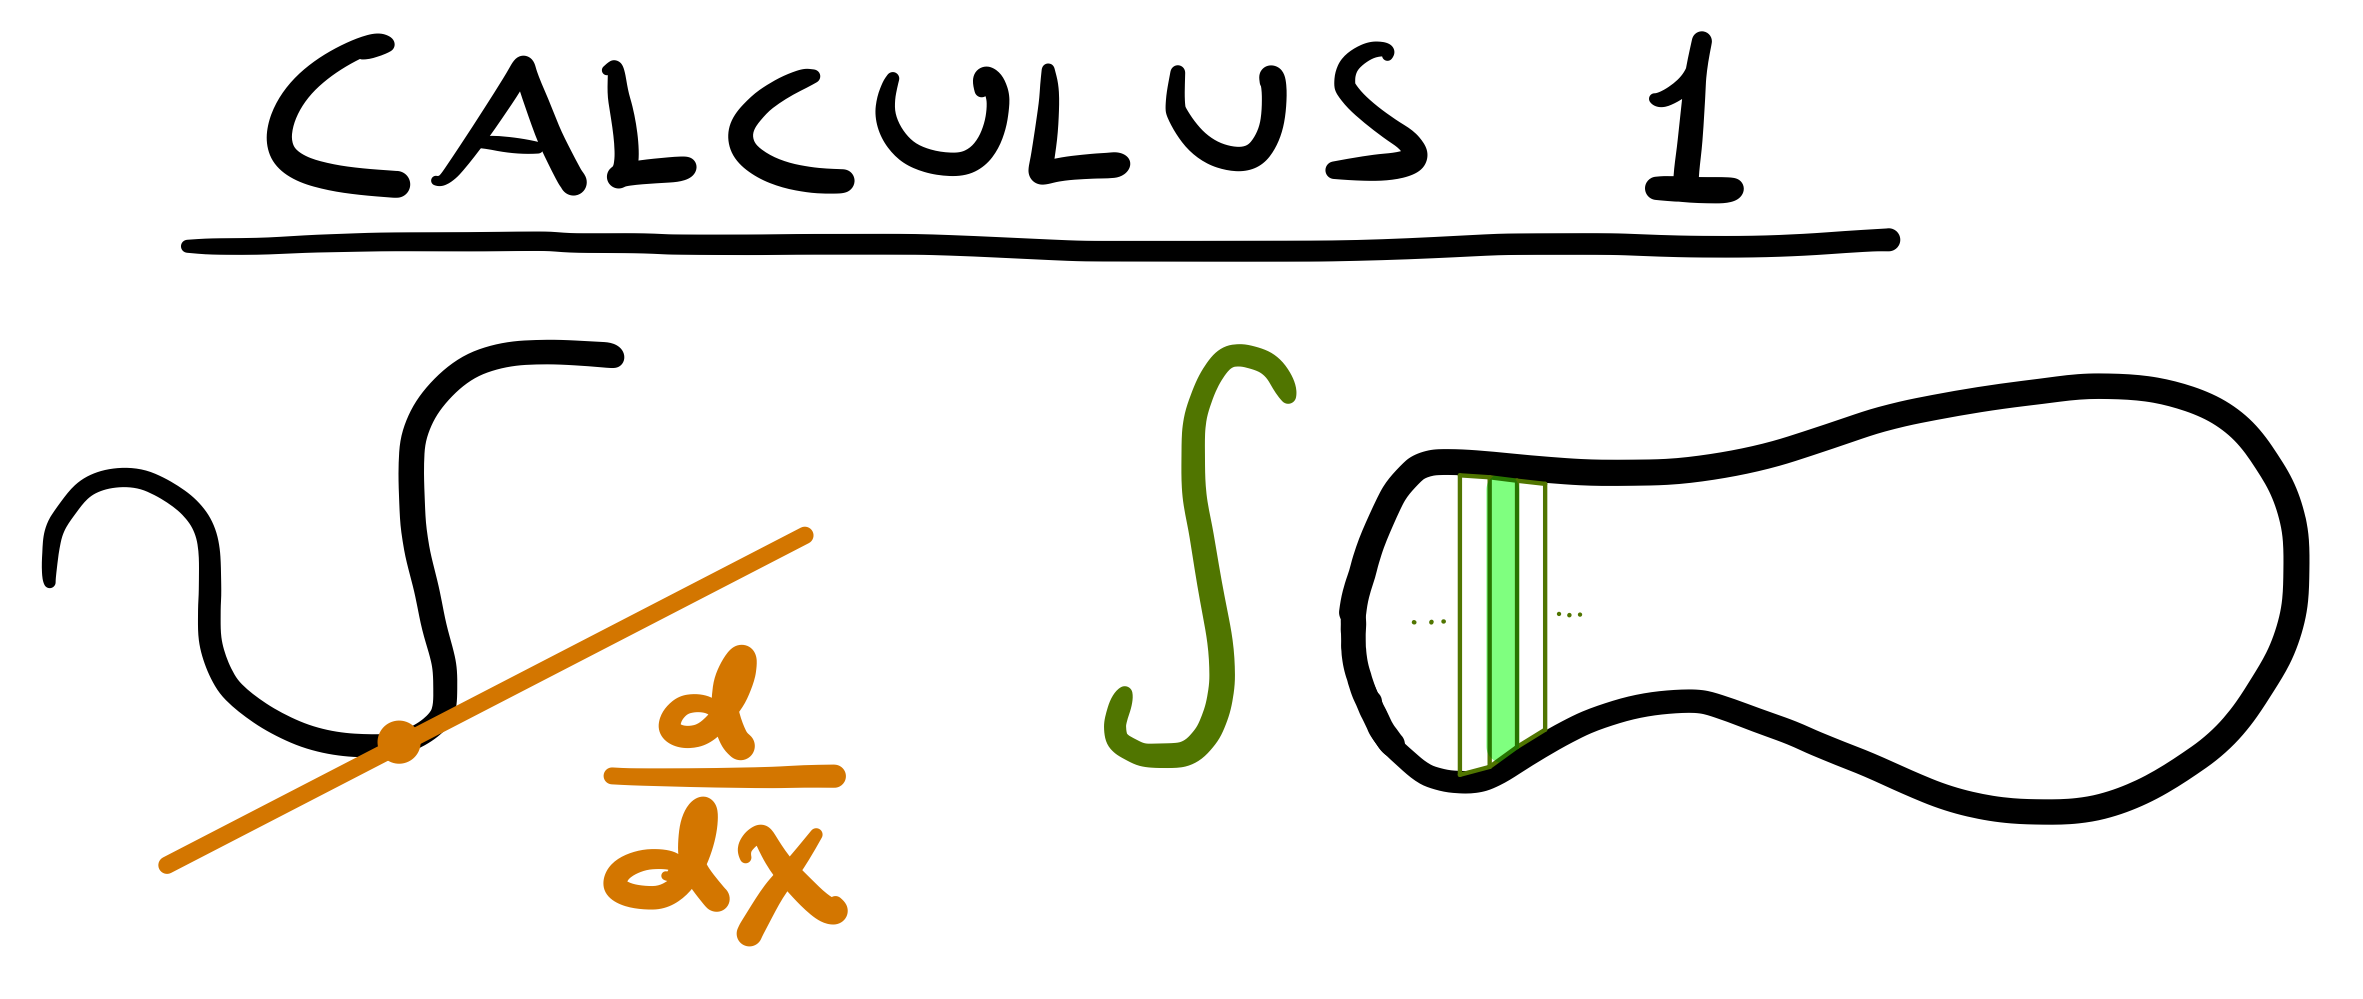 Calulus 2